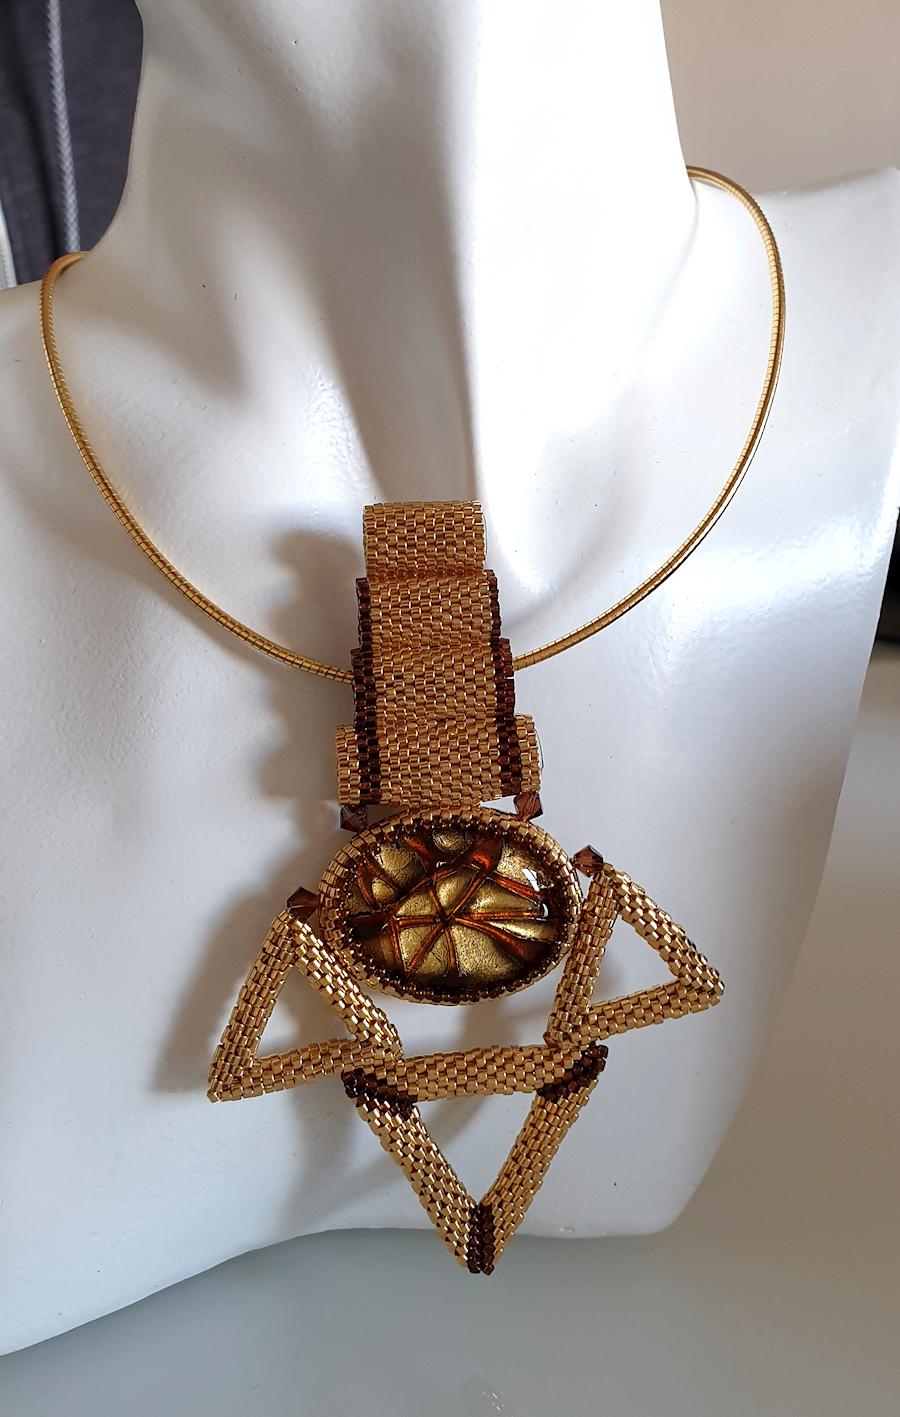 Un petit collier unique en perles de verre de Murano à plusieurs brins d'or et de brun, avec une perle de verre de Murano plus grande au centre.
Unique, fabriqué à la main par l'artiste Paola B., Italie, années 2010.
Composé de : perles en verre de